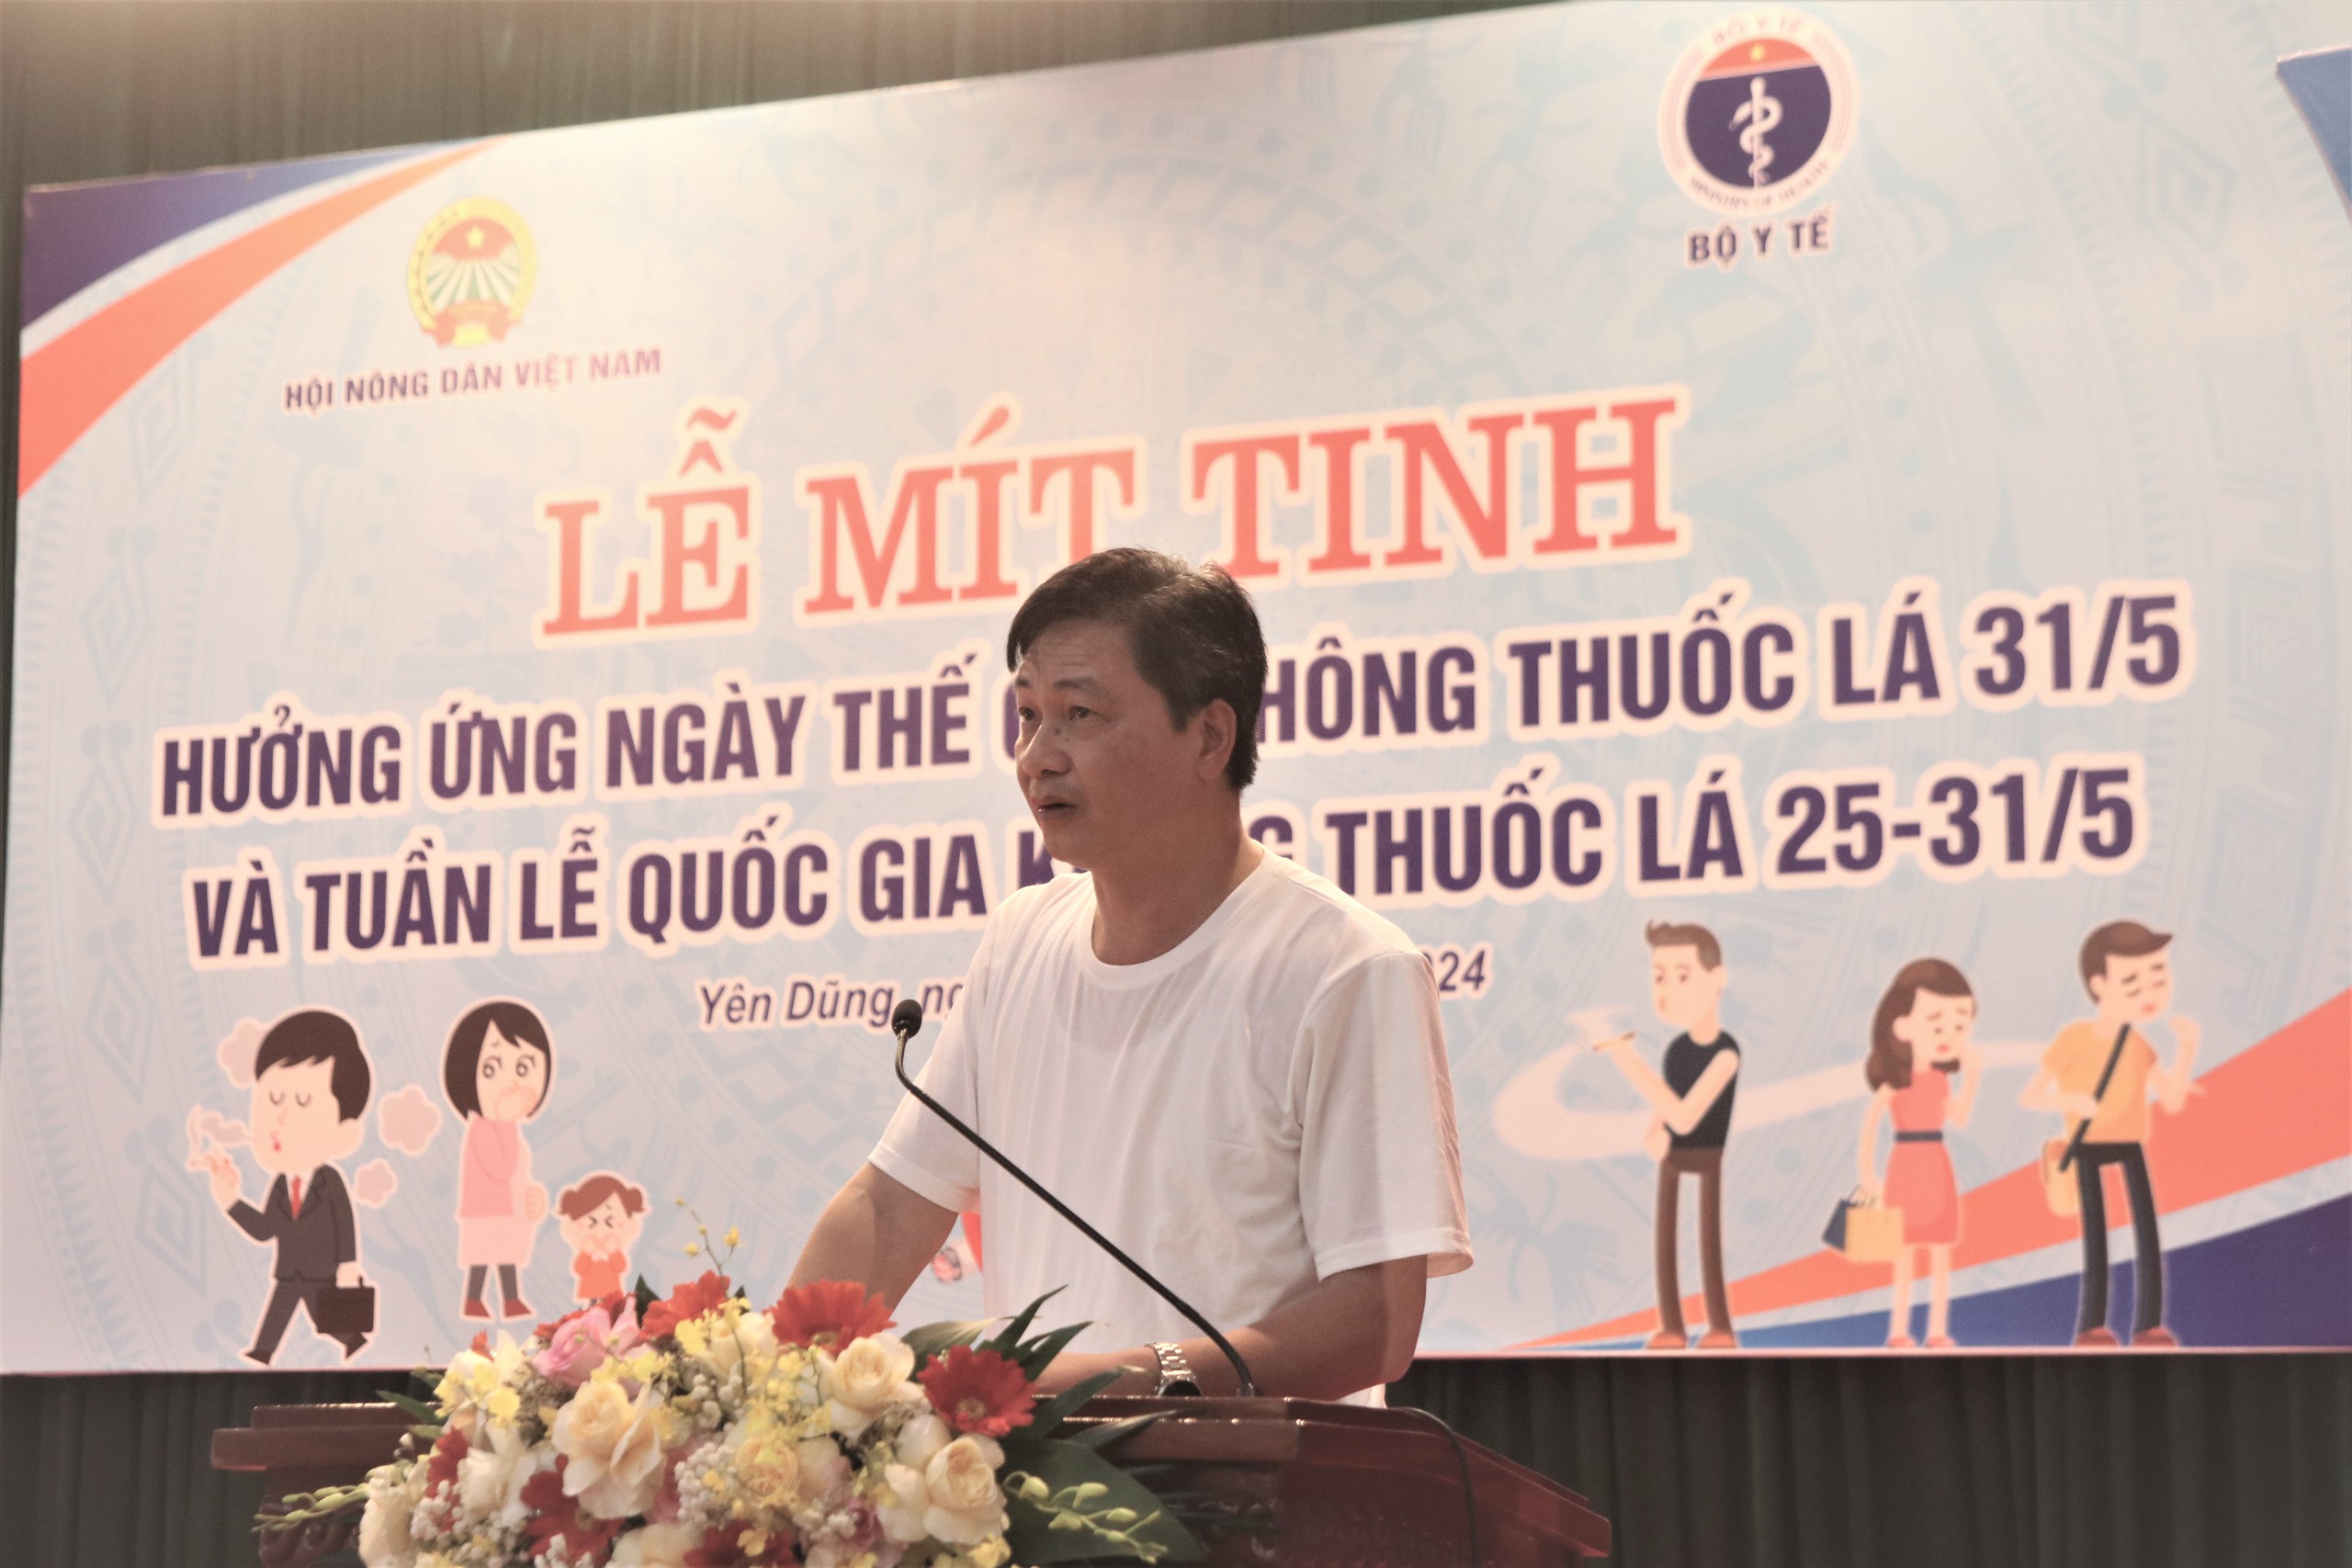 Hội NDVN và Bộ Y tế tổ chức Lễ mít tinh hưởng ứng Ngày Thế giới không thuốc lá tại Bắc Giang- Ảnh 1.